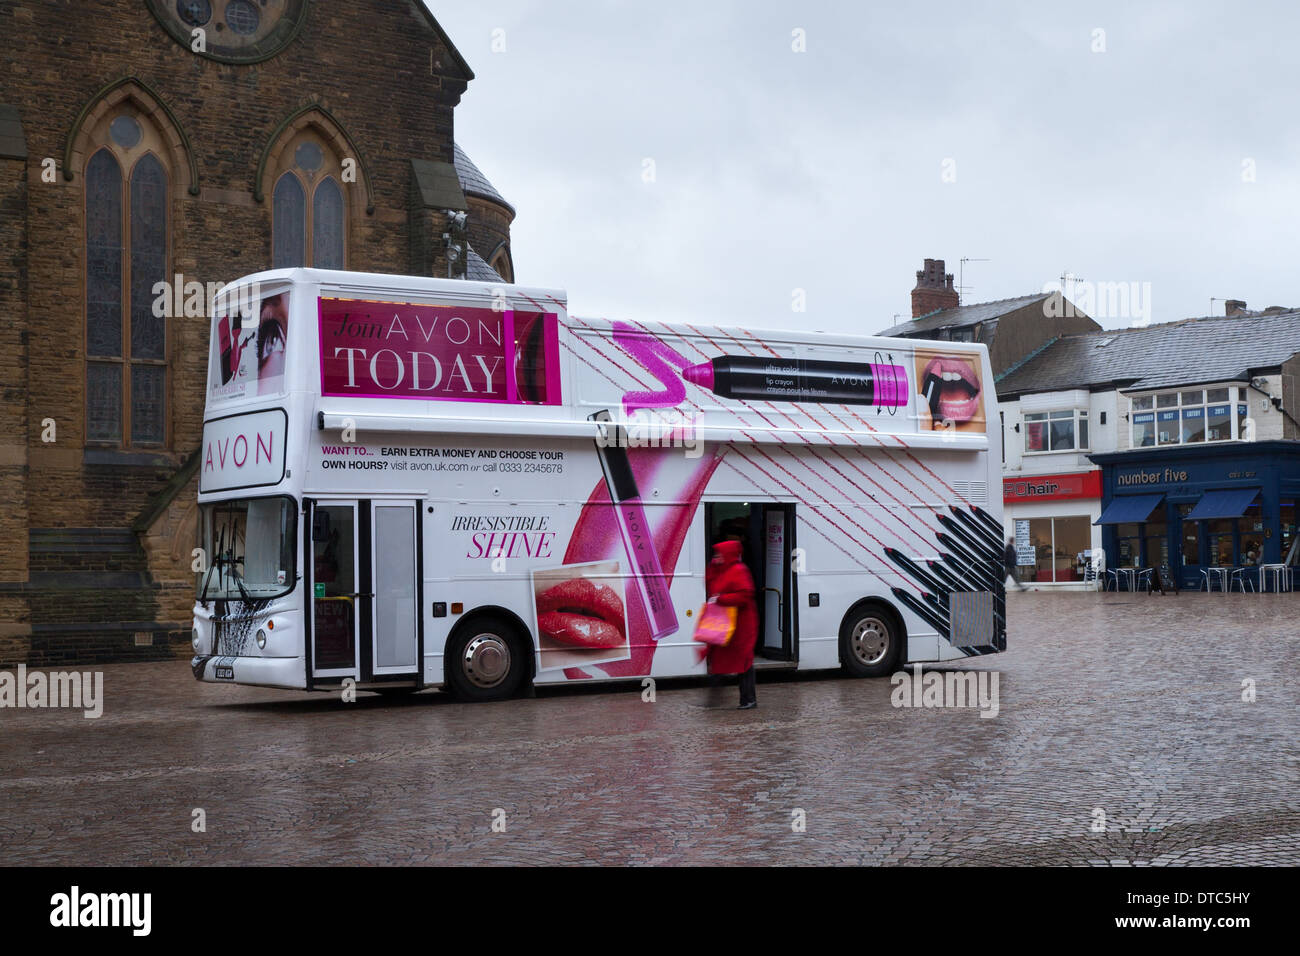 Avon cosmetics Förderung Schönheit bus recruiting Vertreter Agenten in St John's Square, Blackpool, Lancashire, Großbritannien Stockfoto